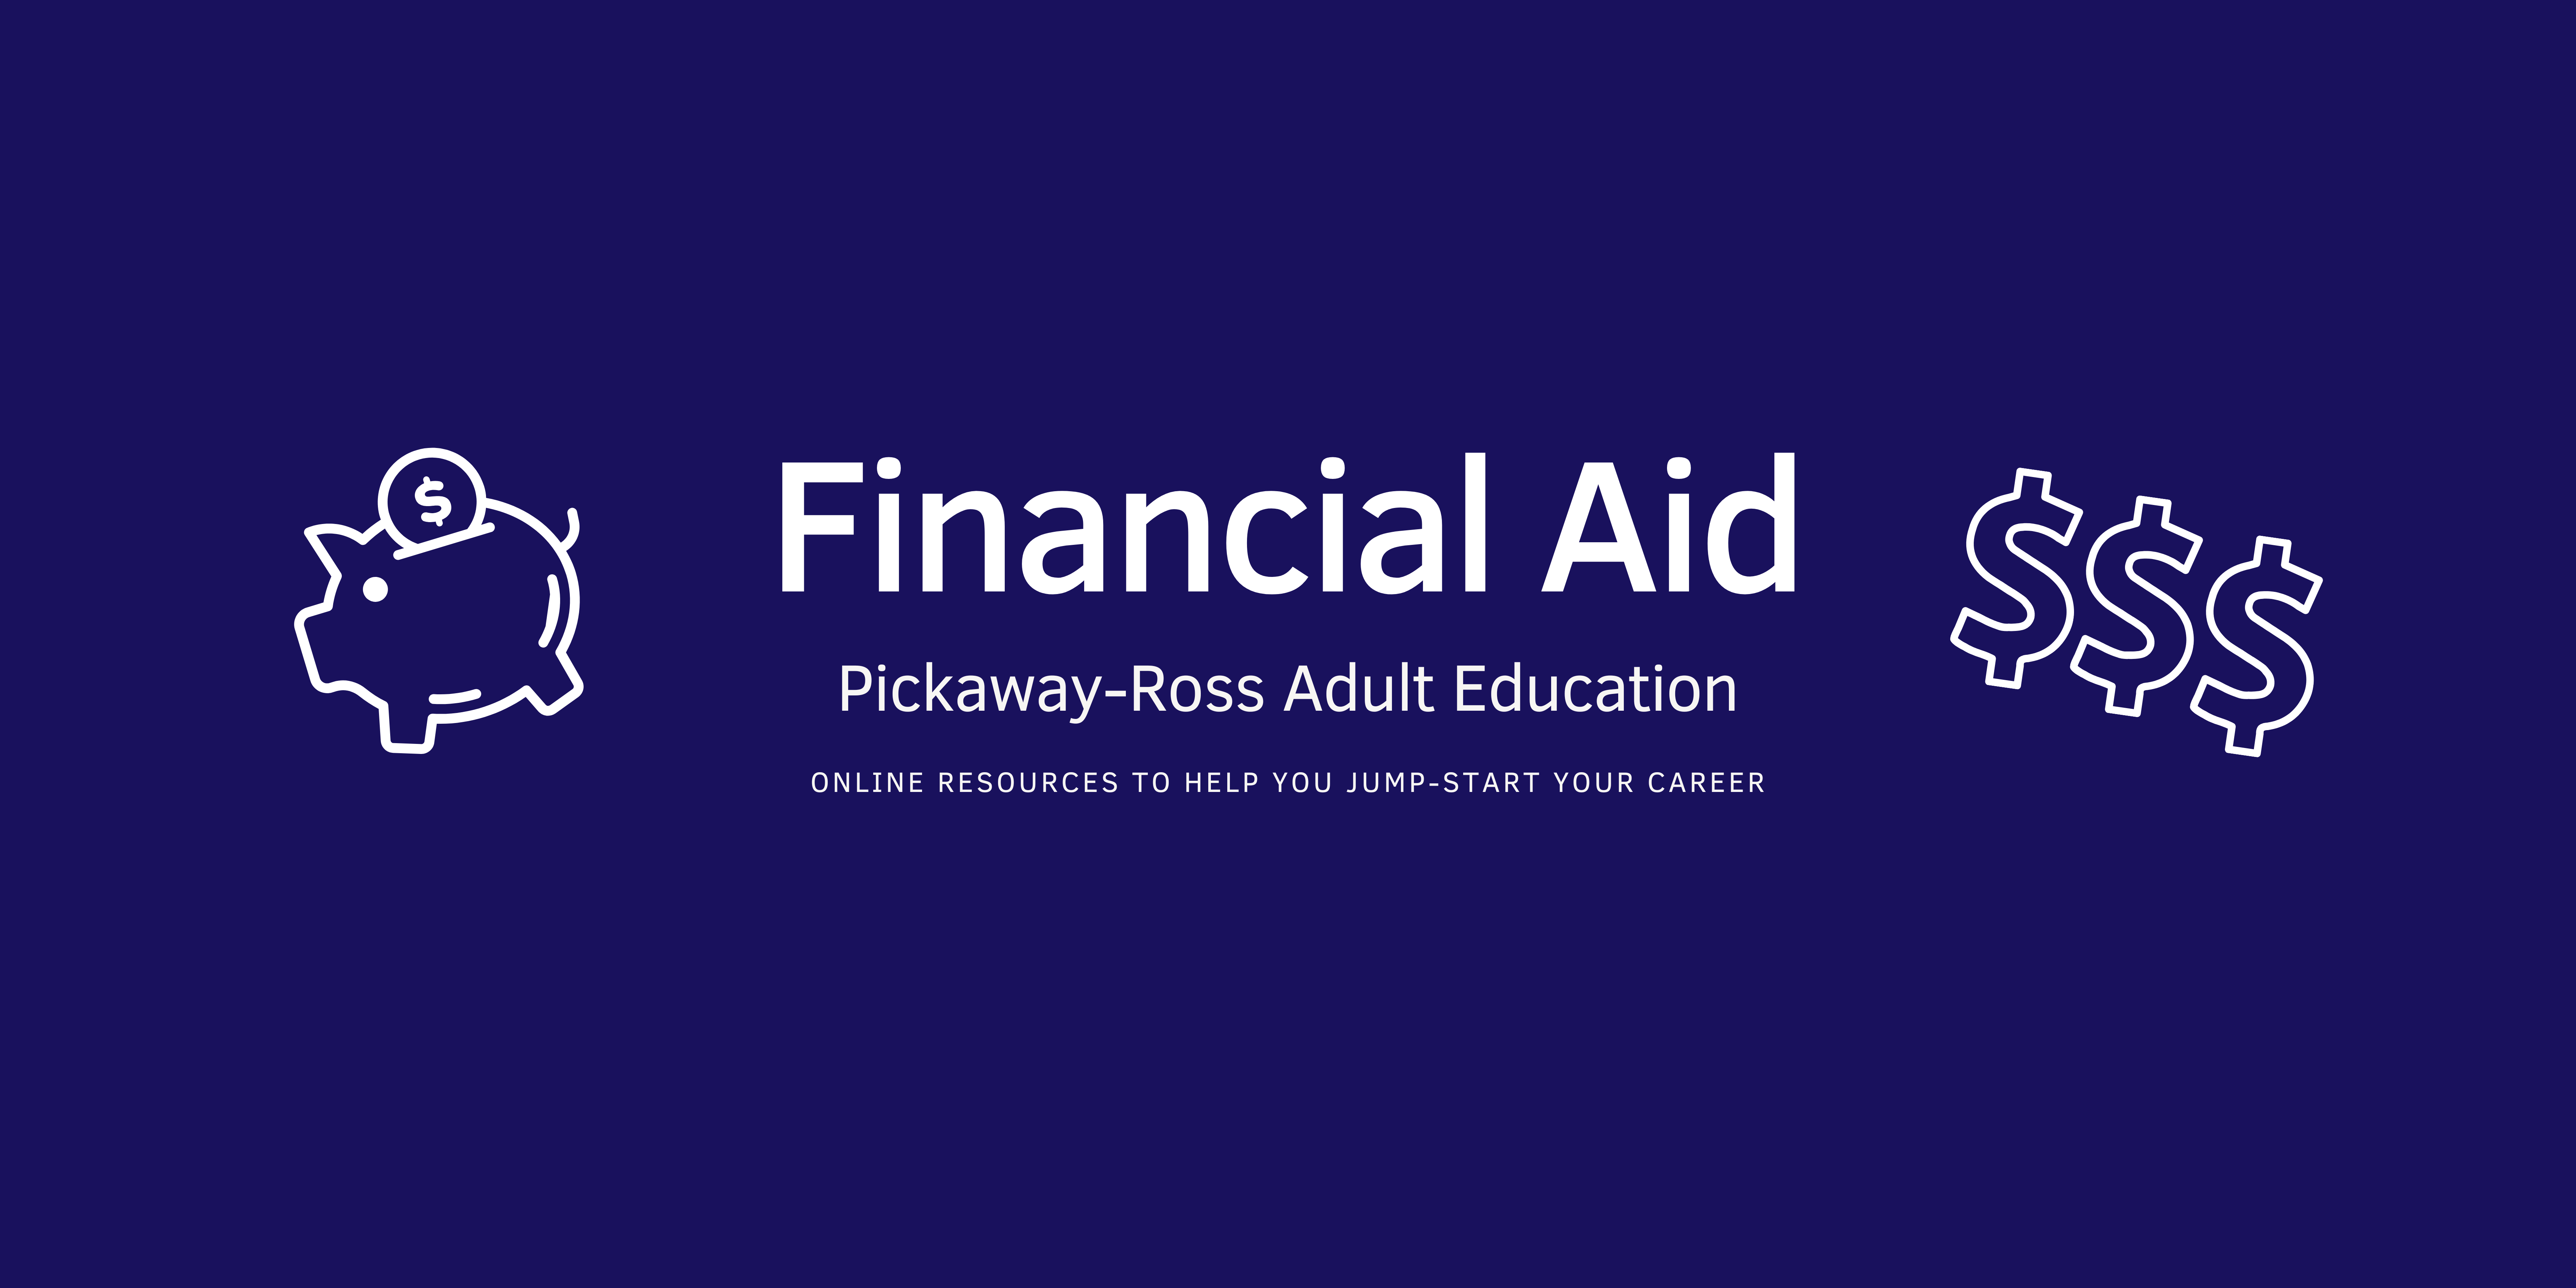 皮克威-罗斯成人教育的财政援助